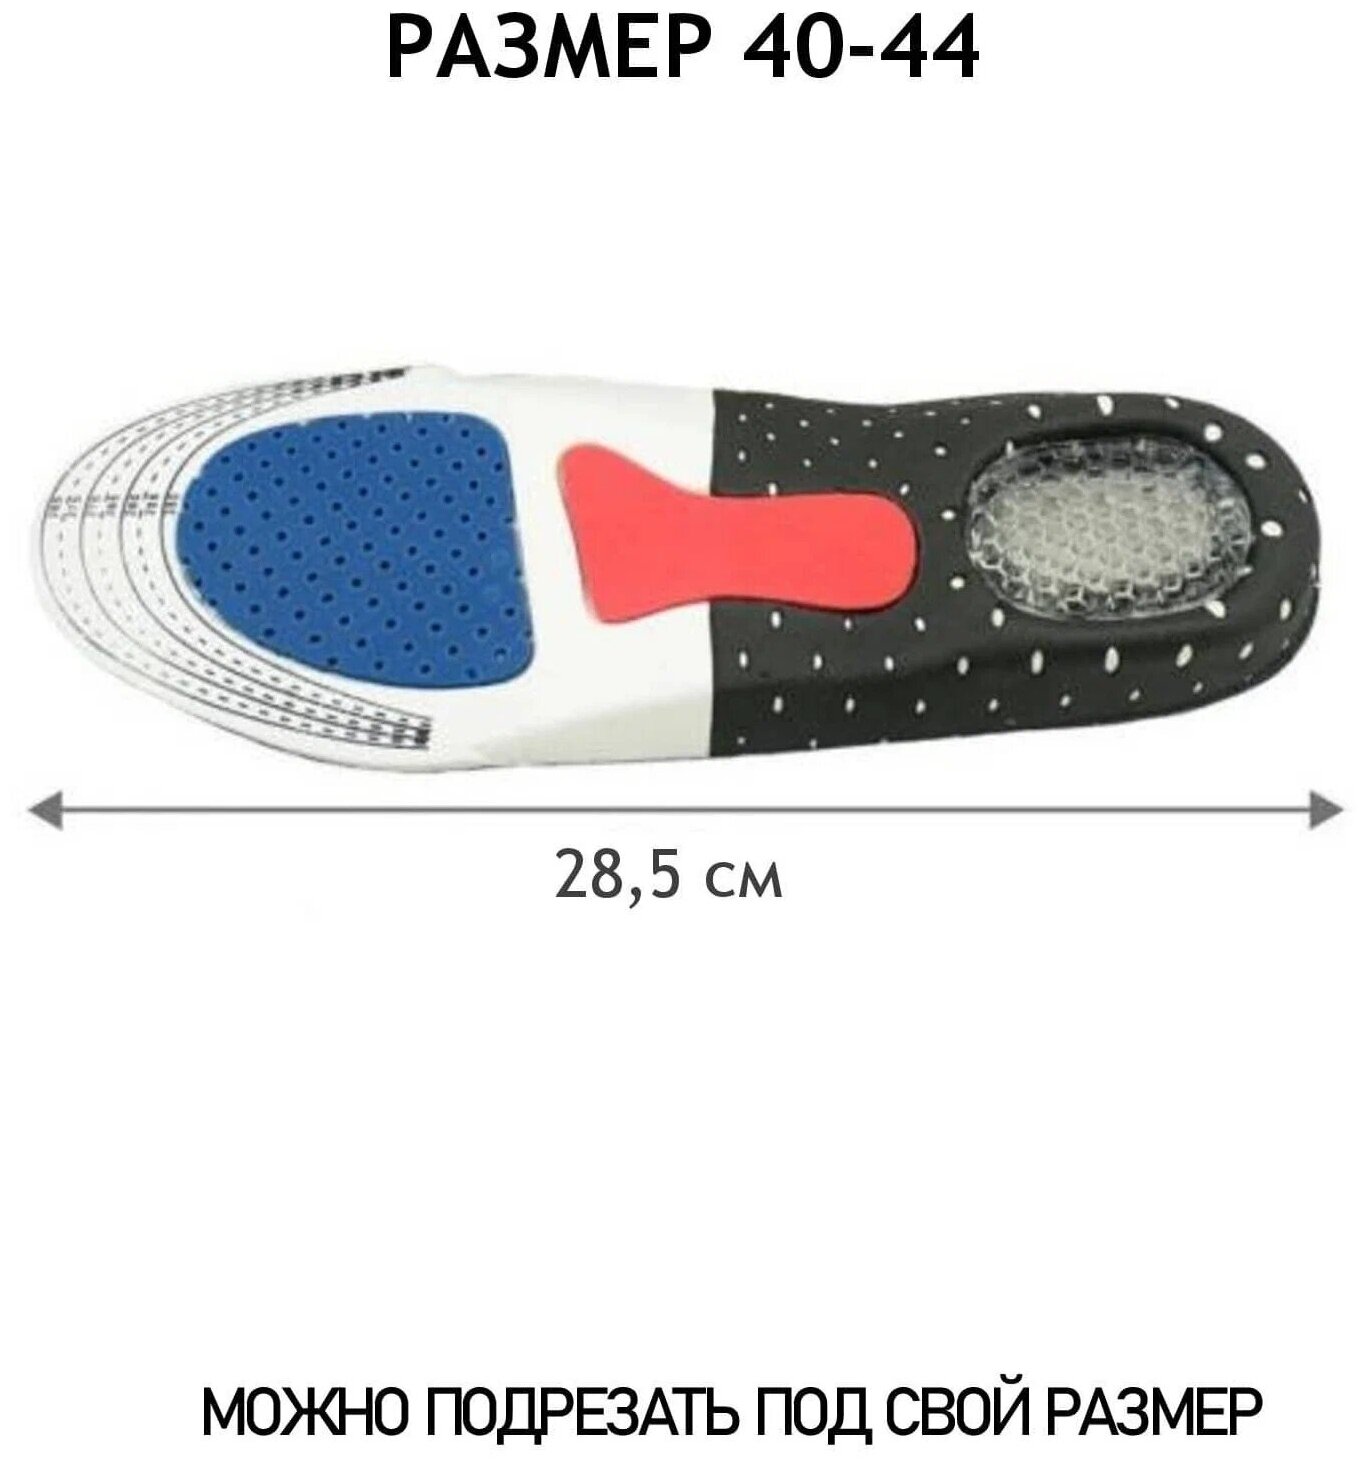 Стельки спортивные с силиконовым амортизатором универсальные мужские. Размер: 40-46. Продаются комплектом: по 2 пары